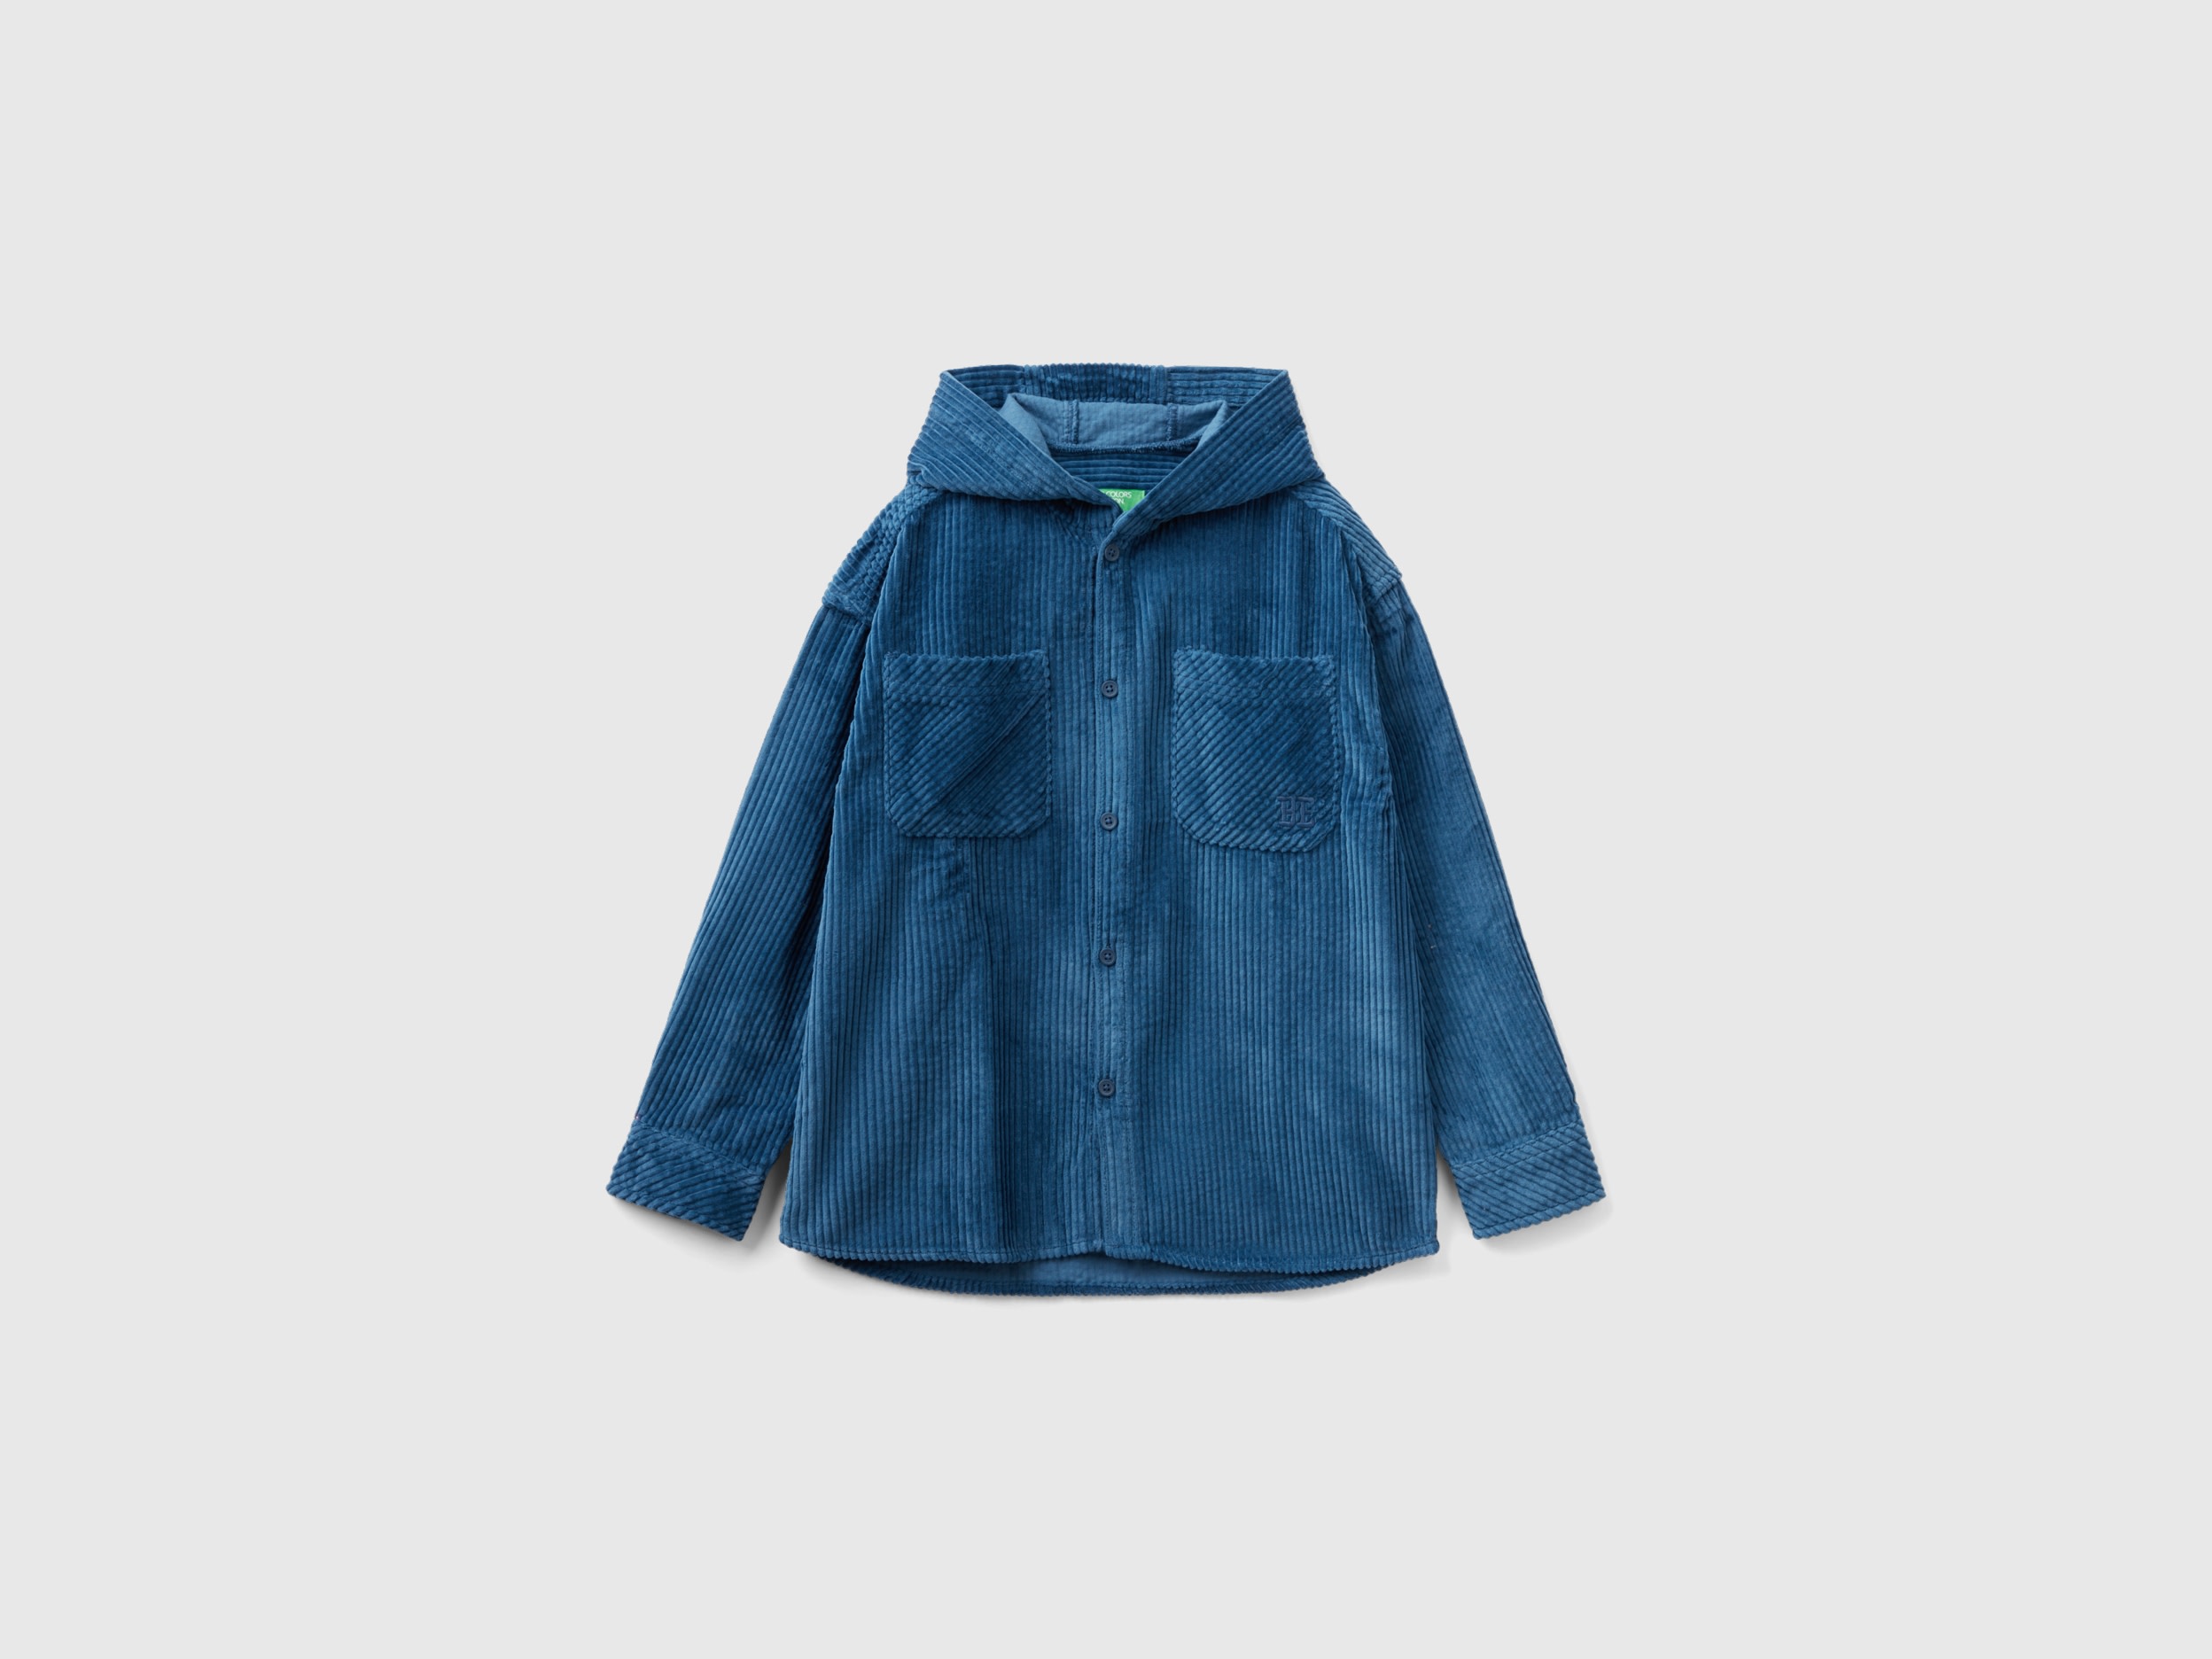 Benetton, Velvet Shirt With Hood, size 2XL, Air Force Blue, Kids